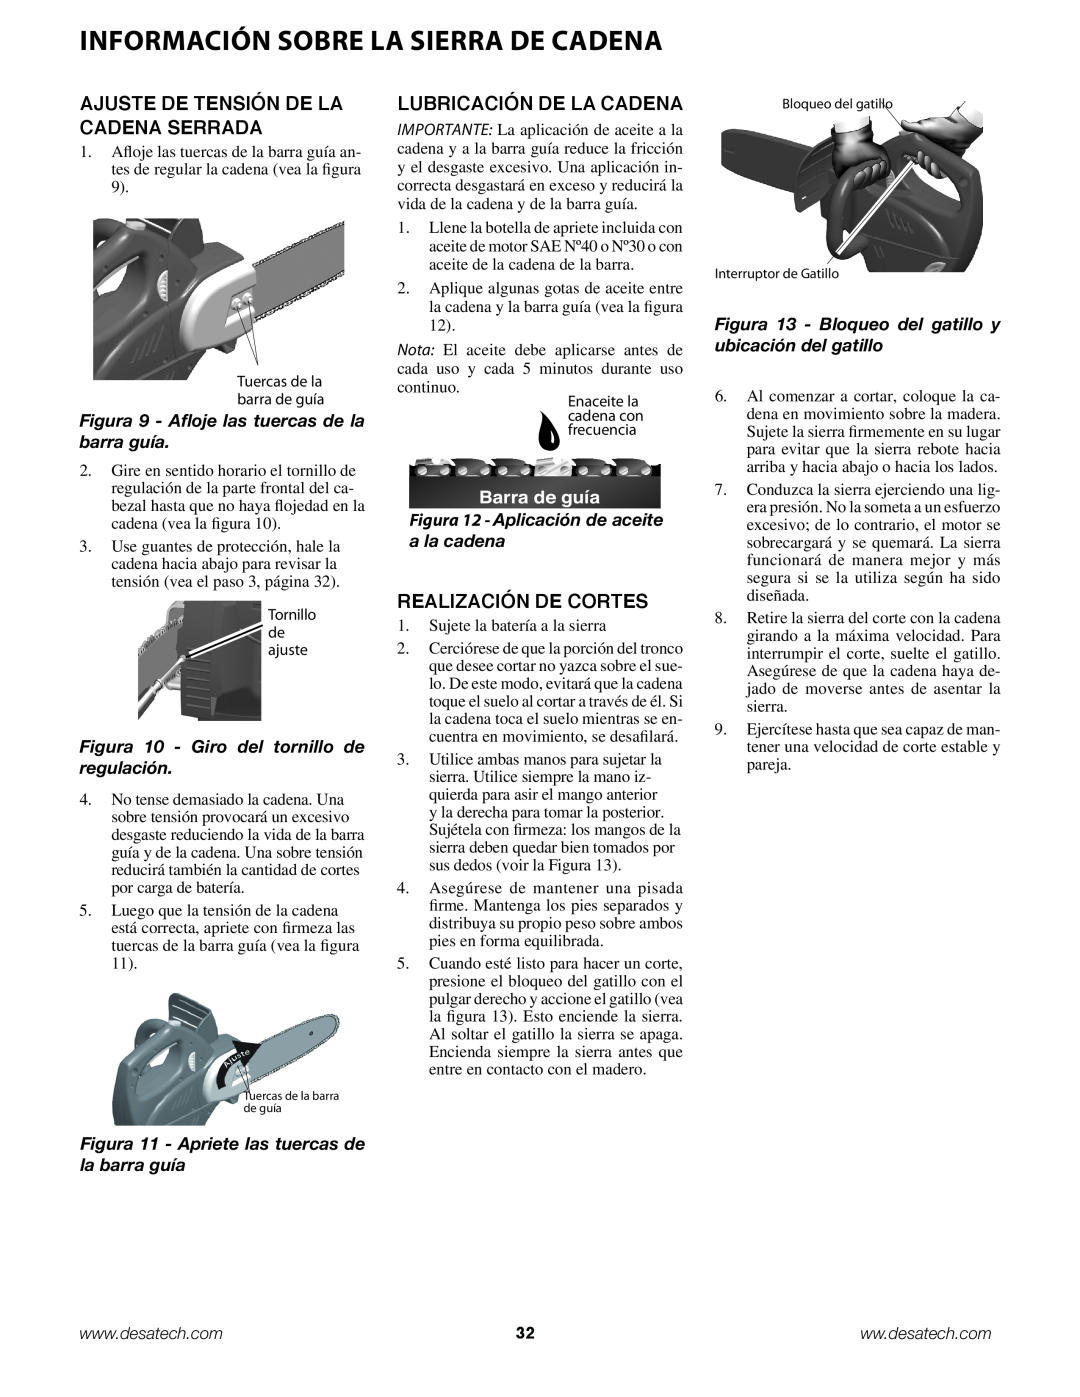 Remington Power Tools BPS188A, BS188A Información sobre la sierra de cadena, Ajuste De Tensión De La Cadena Serrada 